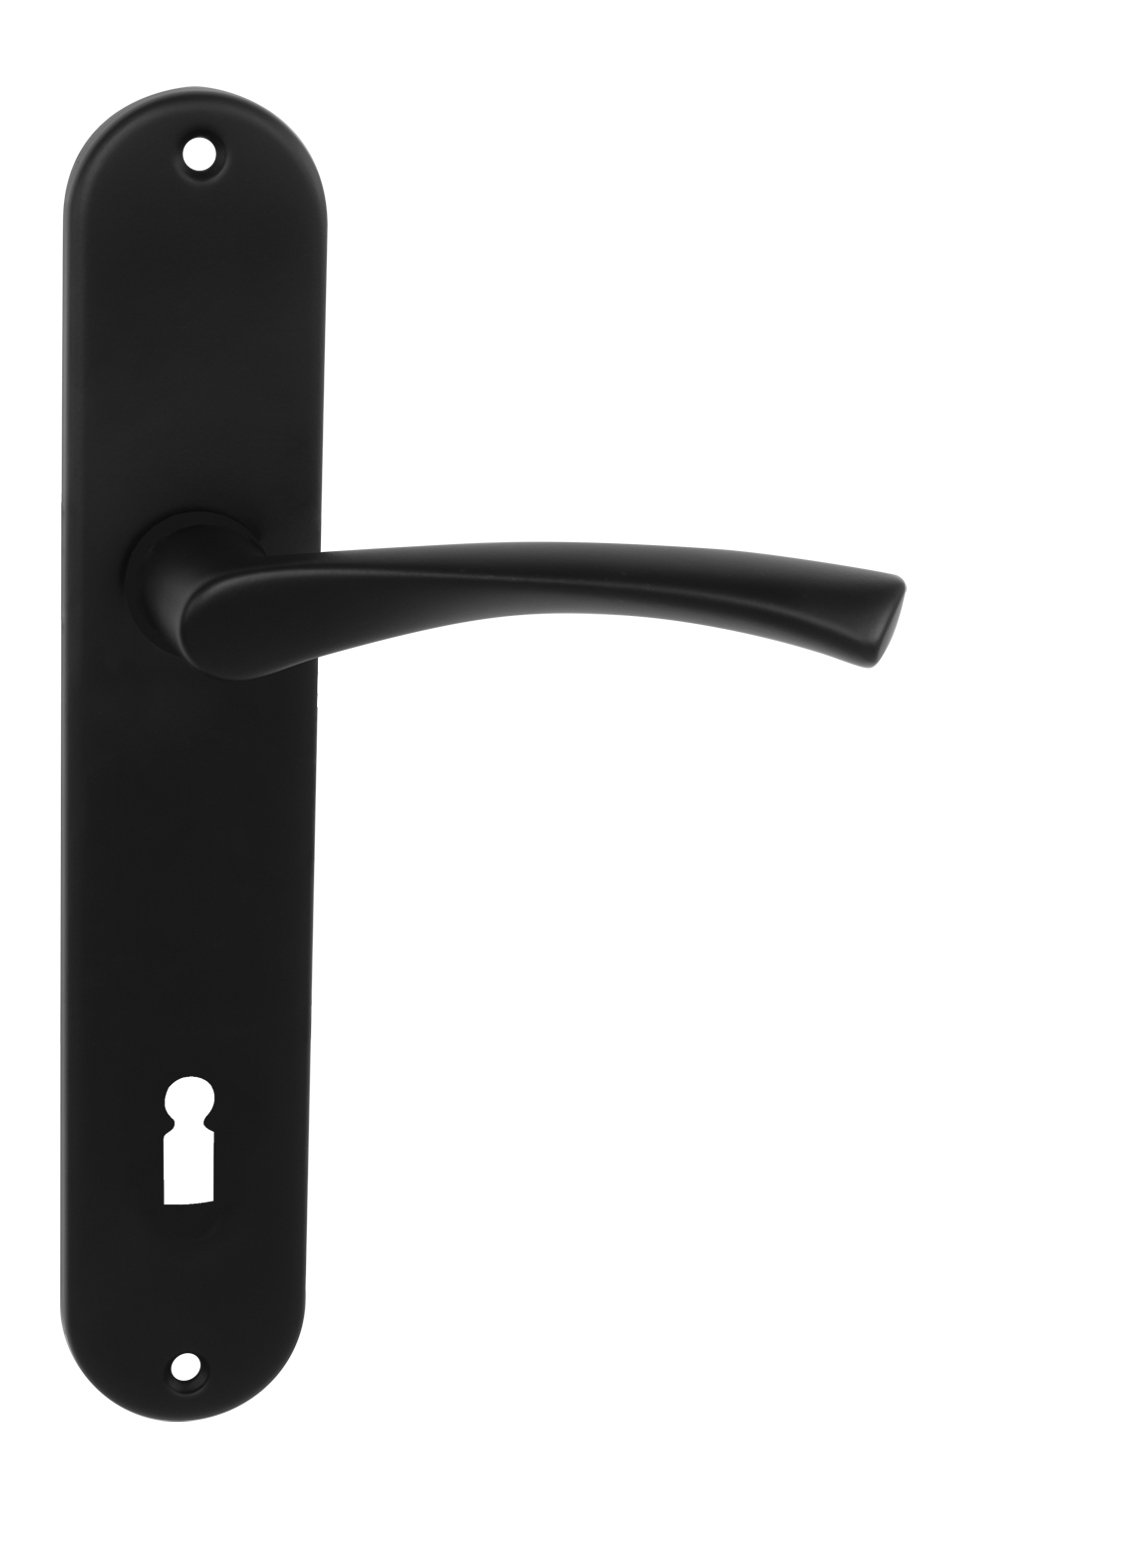 BA - TORNADO - SO BB otvor pre kľúč, 72 mm, kľučka/kľučka